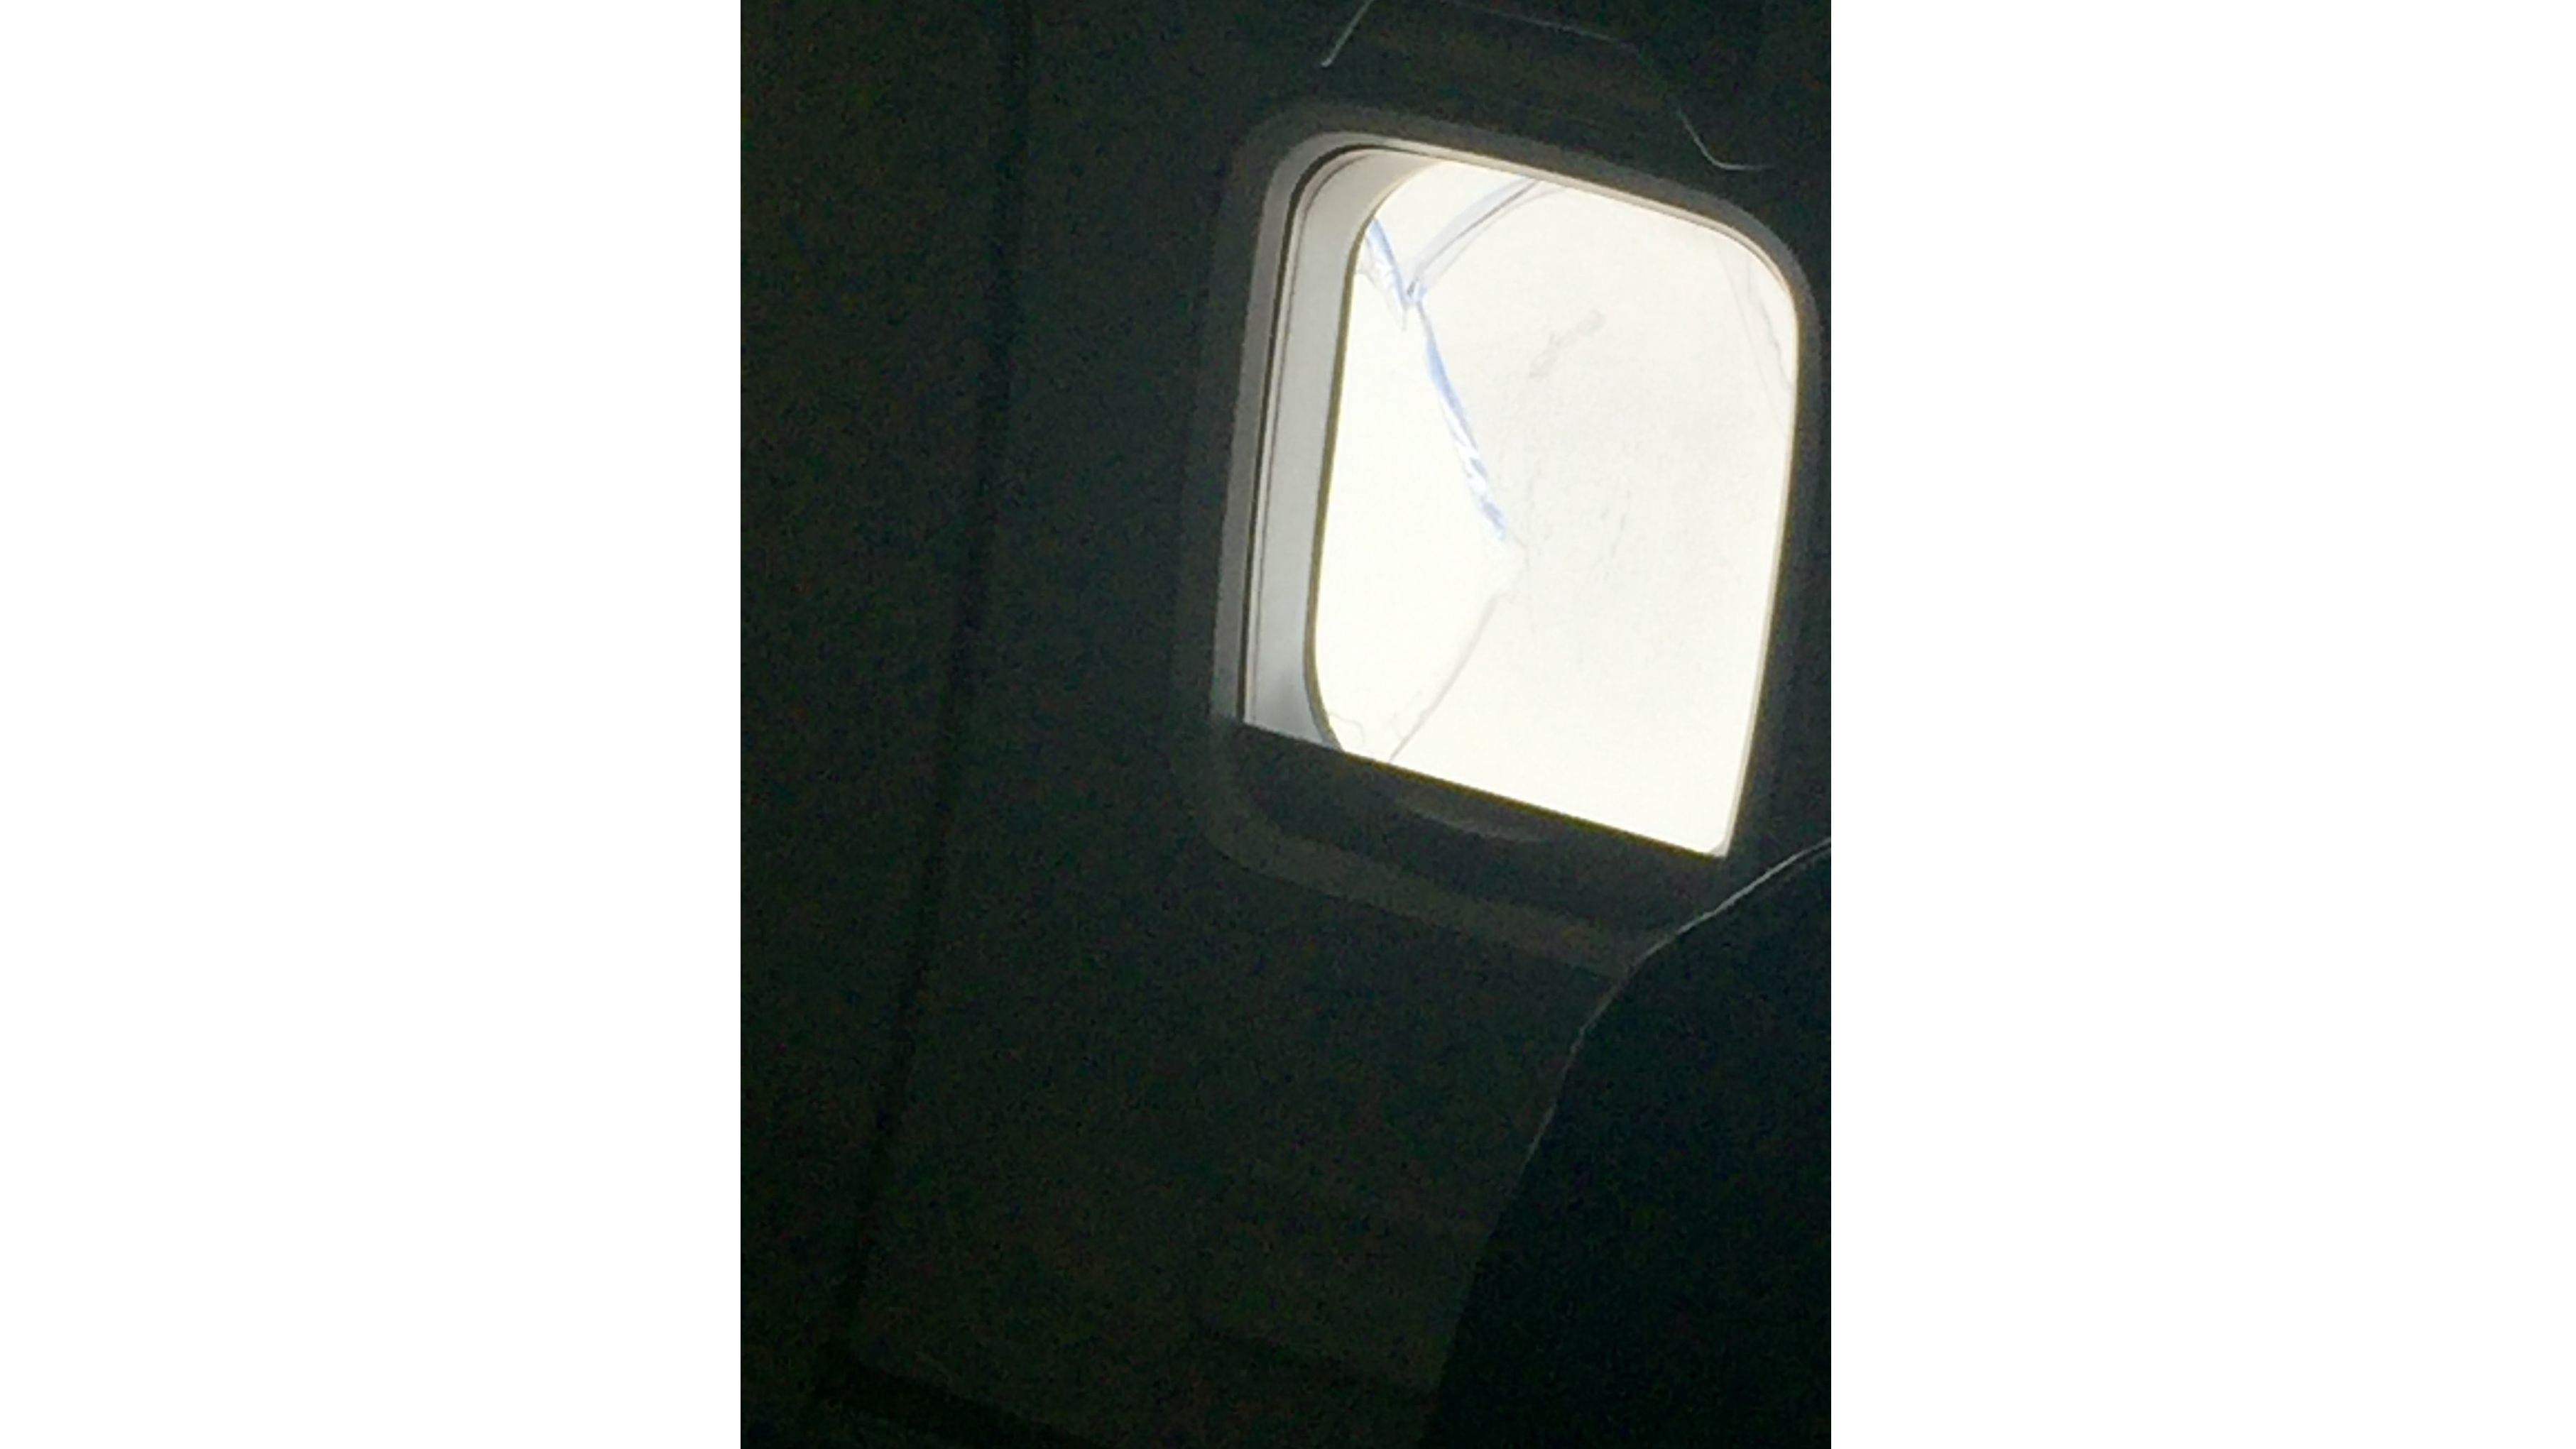 Southwest Flight 957 makes unplanned landing with broken window | CNN